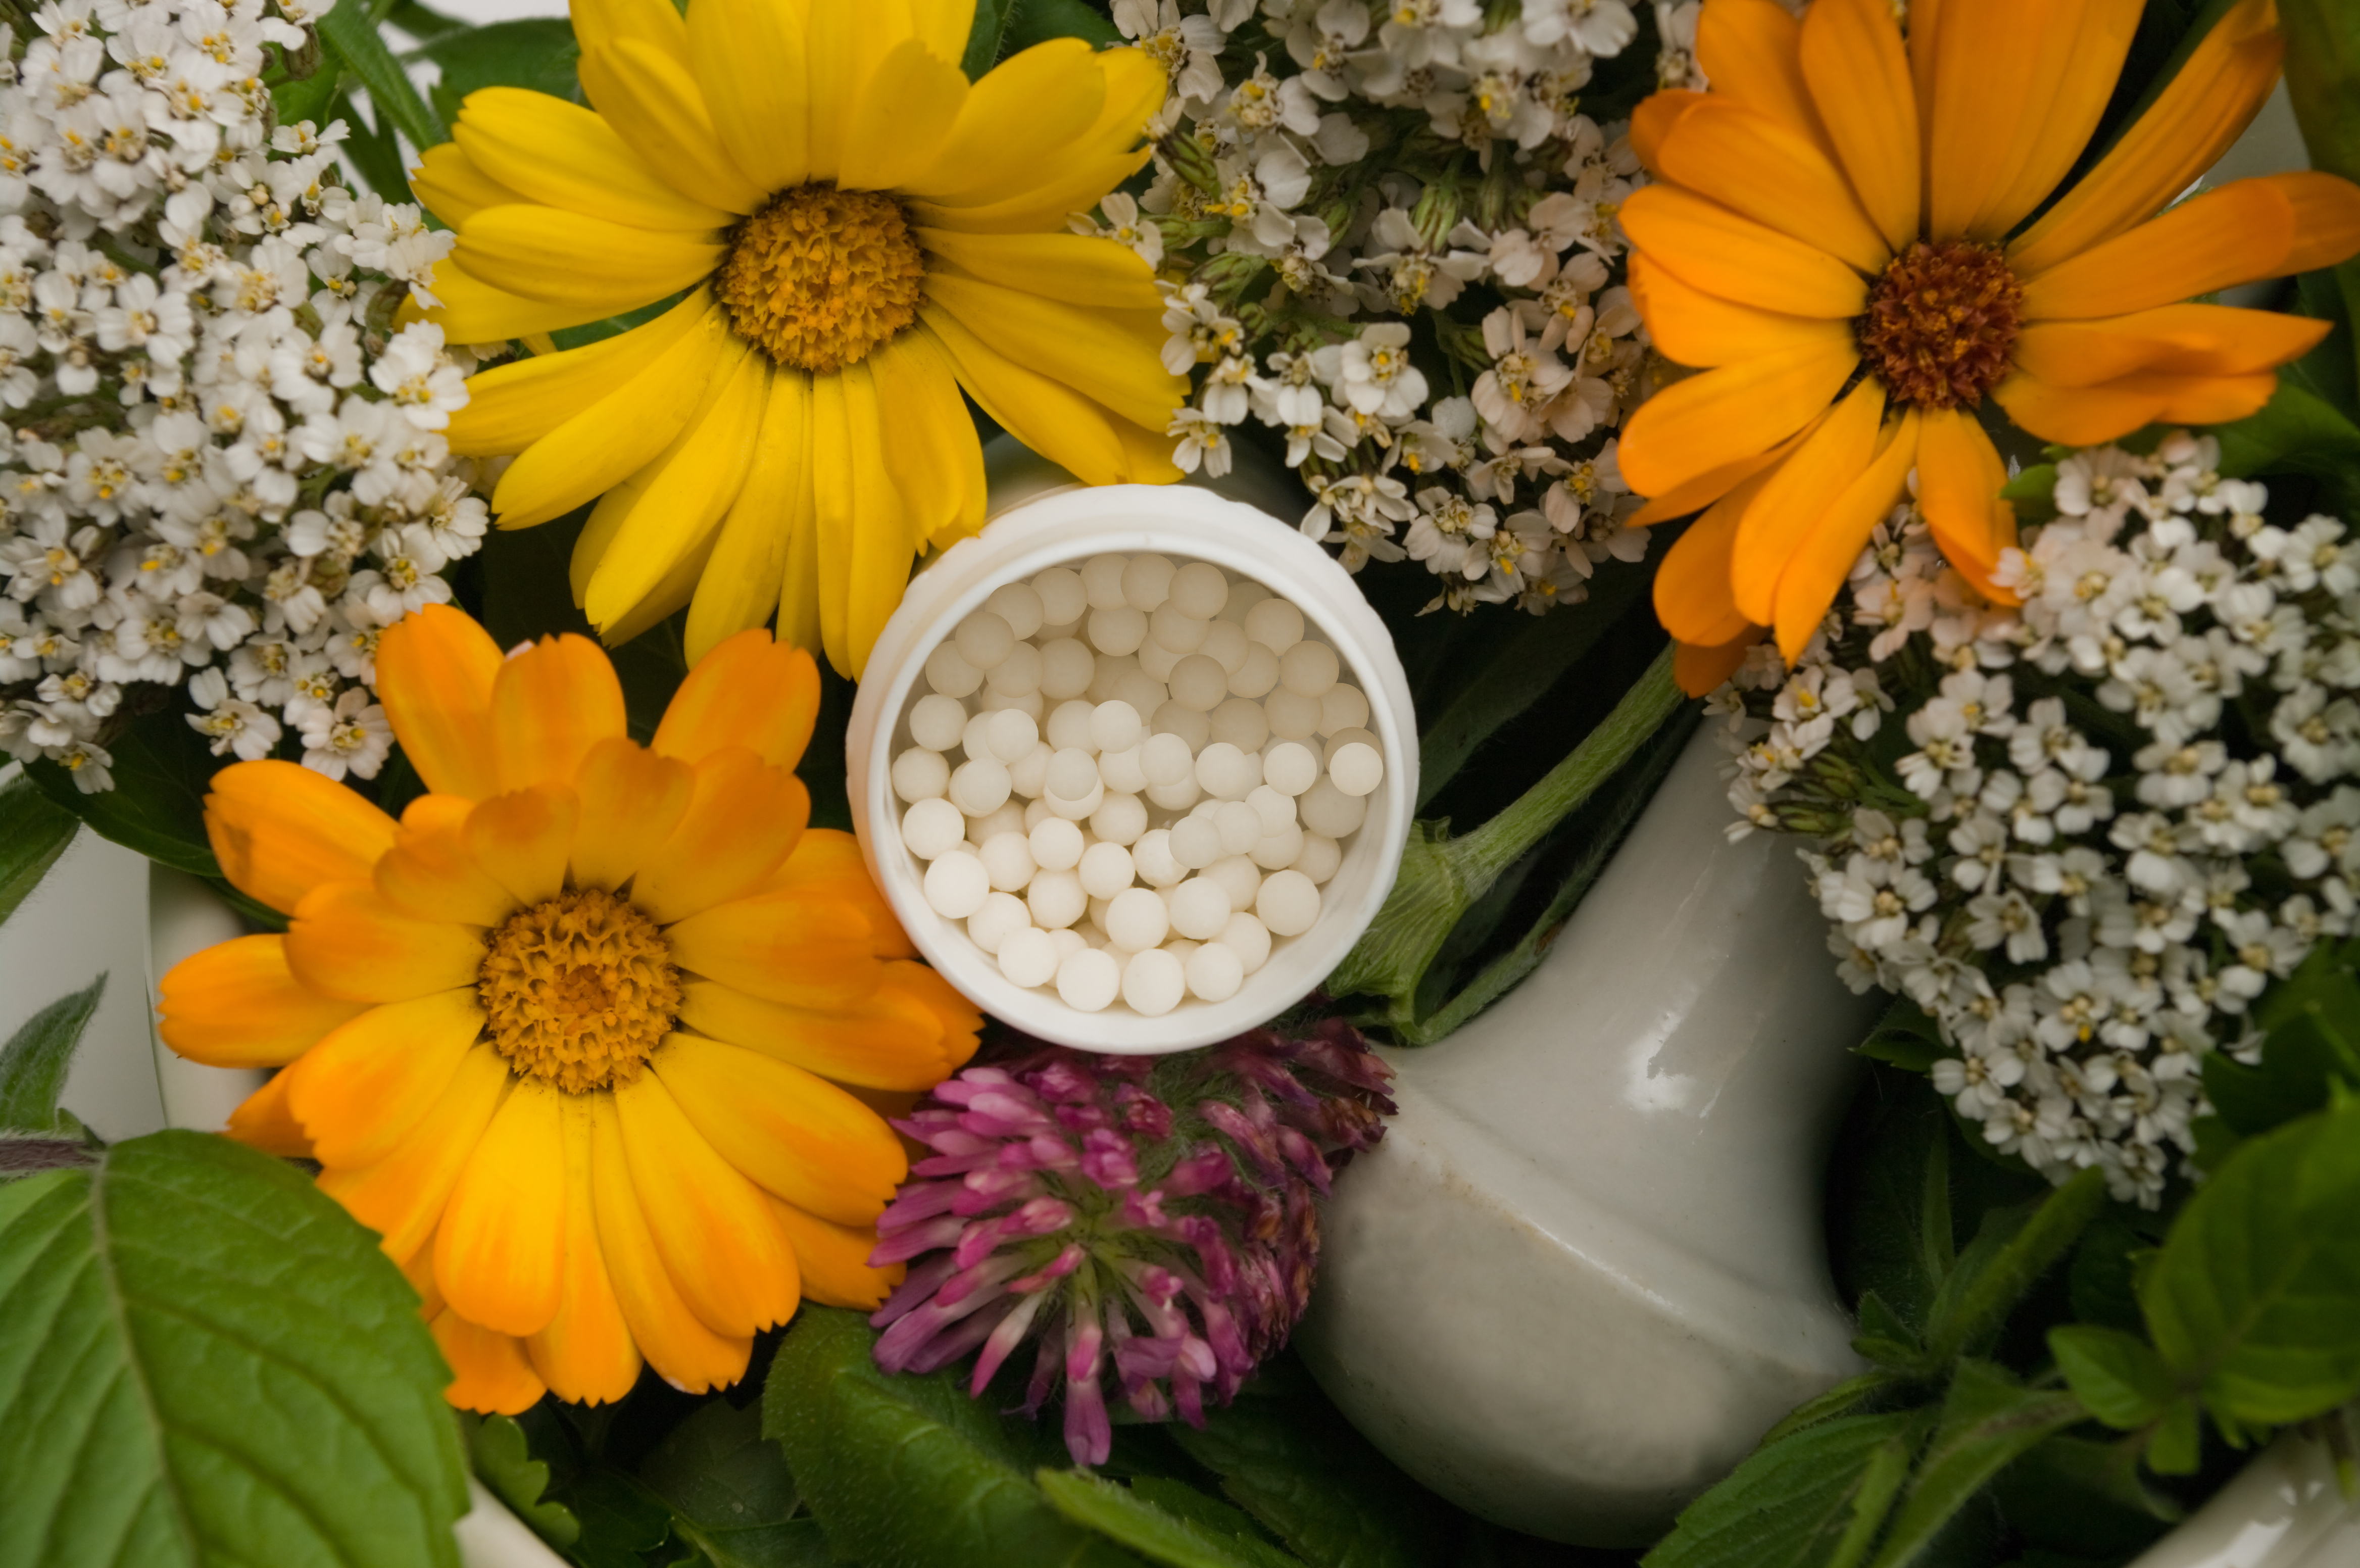 Oare pot sa slabesc cu ajutorul homeopatiei? | marcelpavel.ro